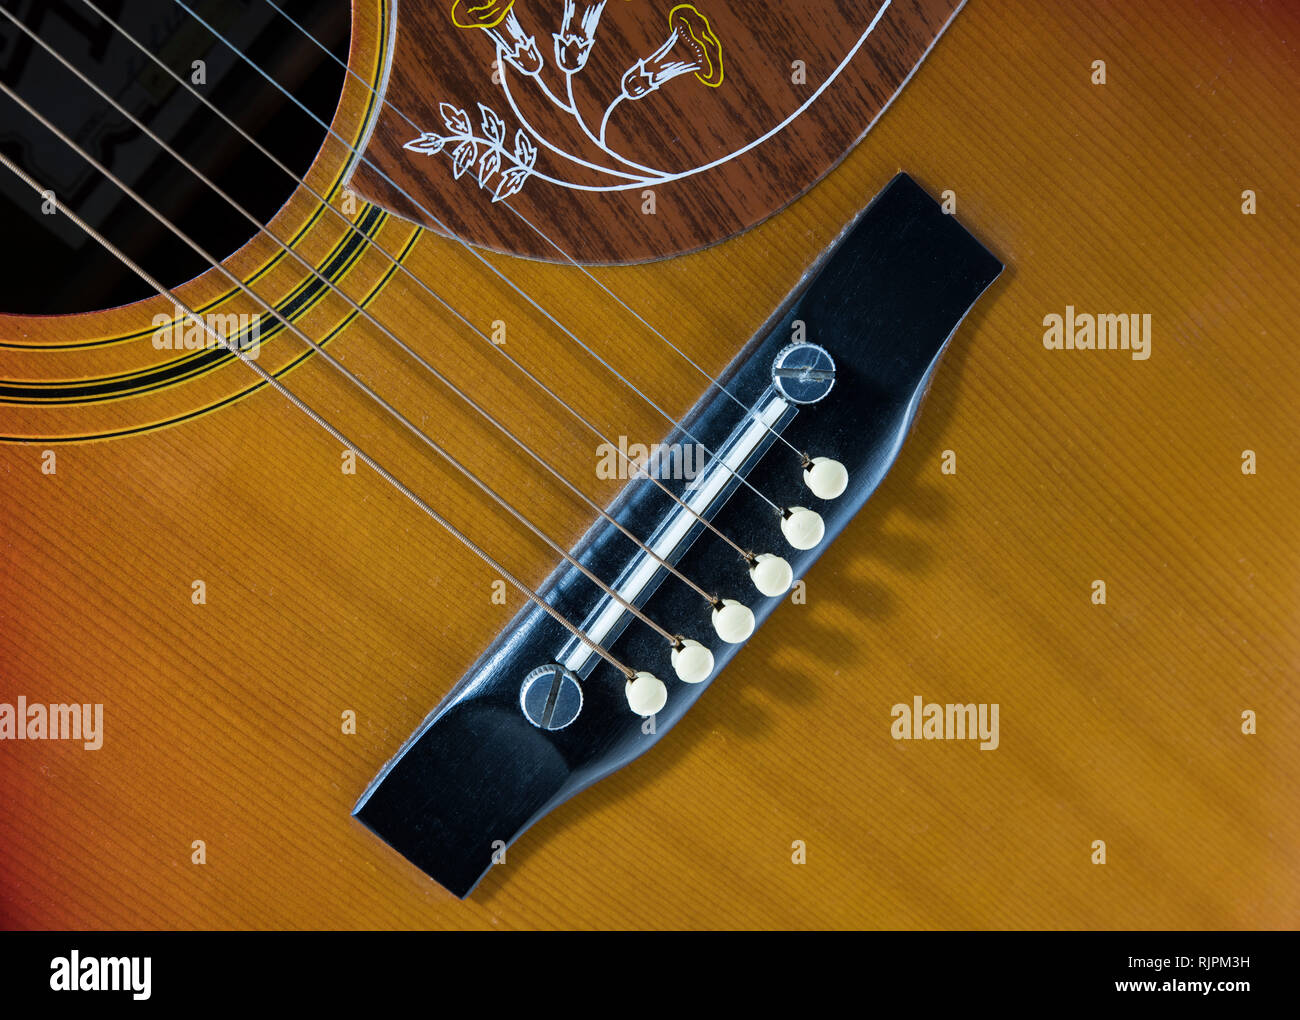 Red Western Gitarre Musik Instrument durch die Zeichenfolgen in der Nähe Stockfoto